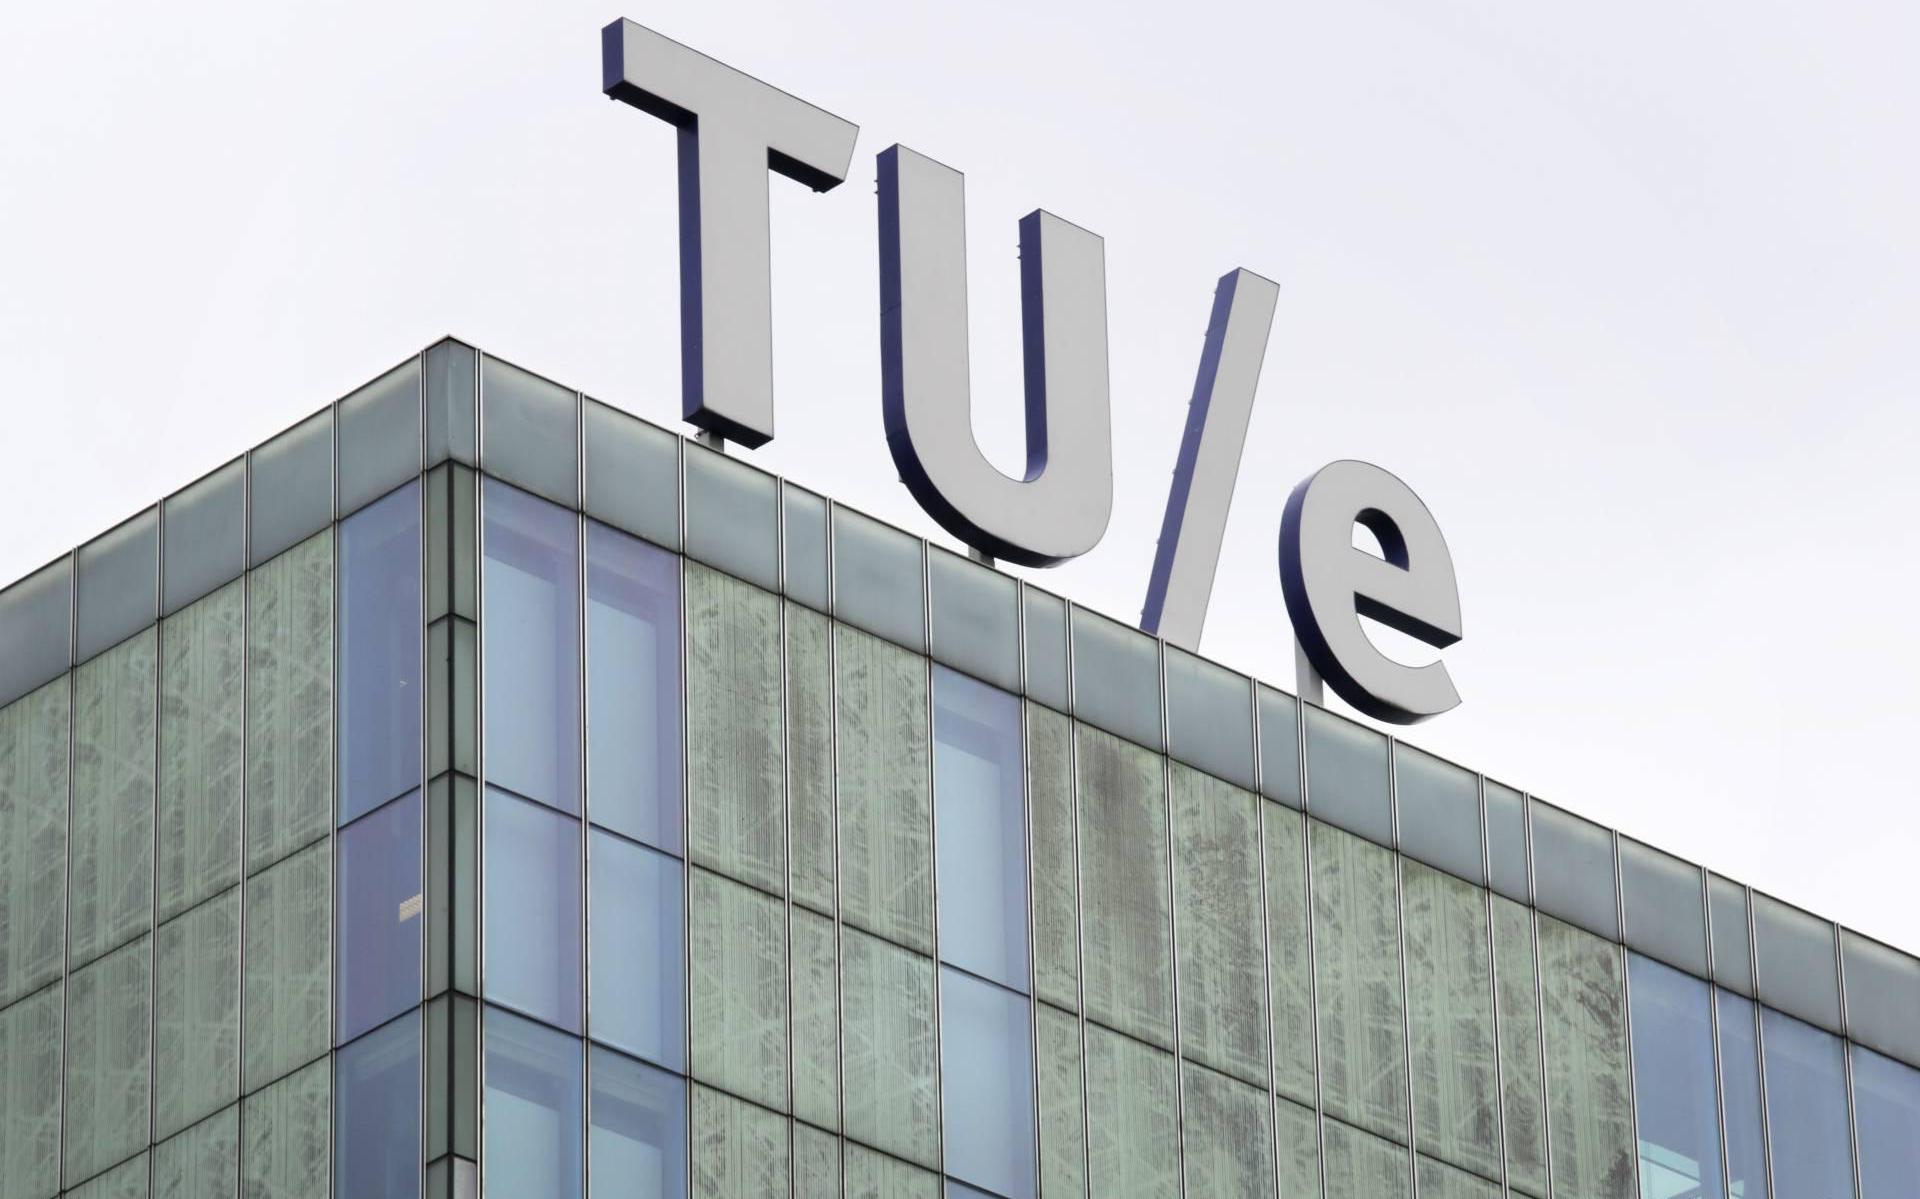 Nieuw instituut TU Eindhoven wil energietransitie vooruit helpen